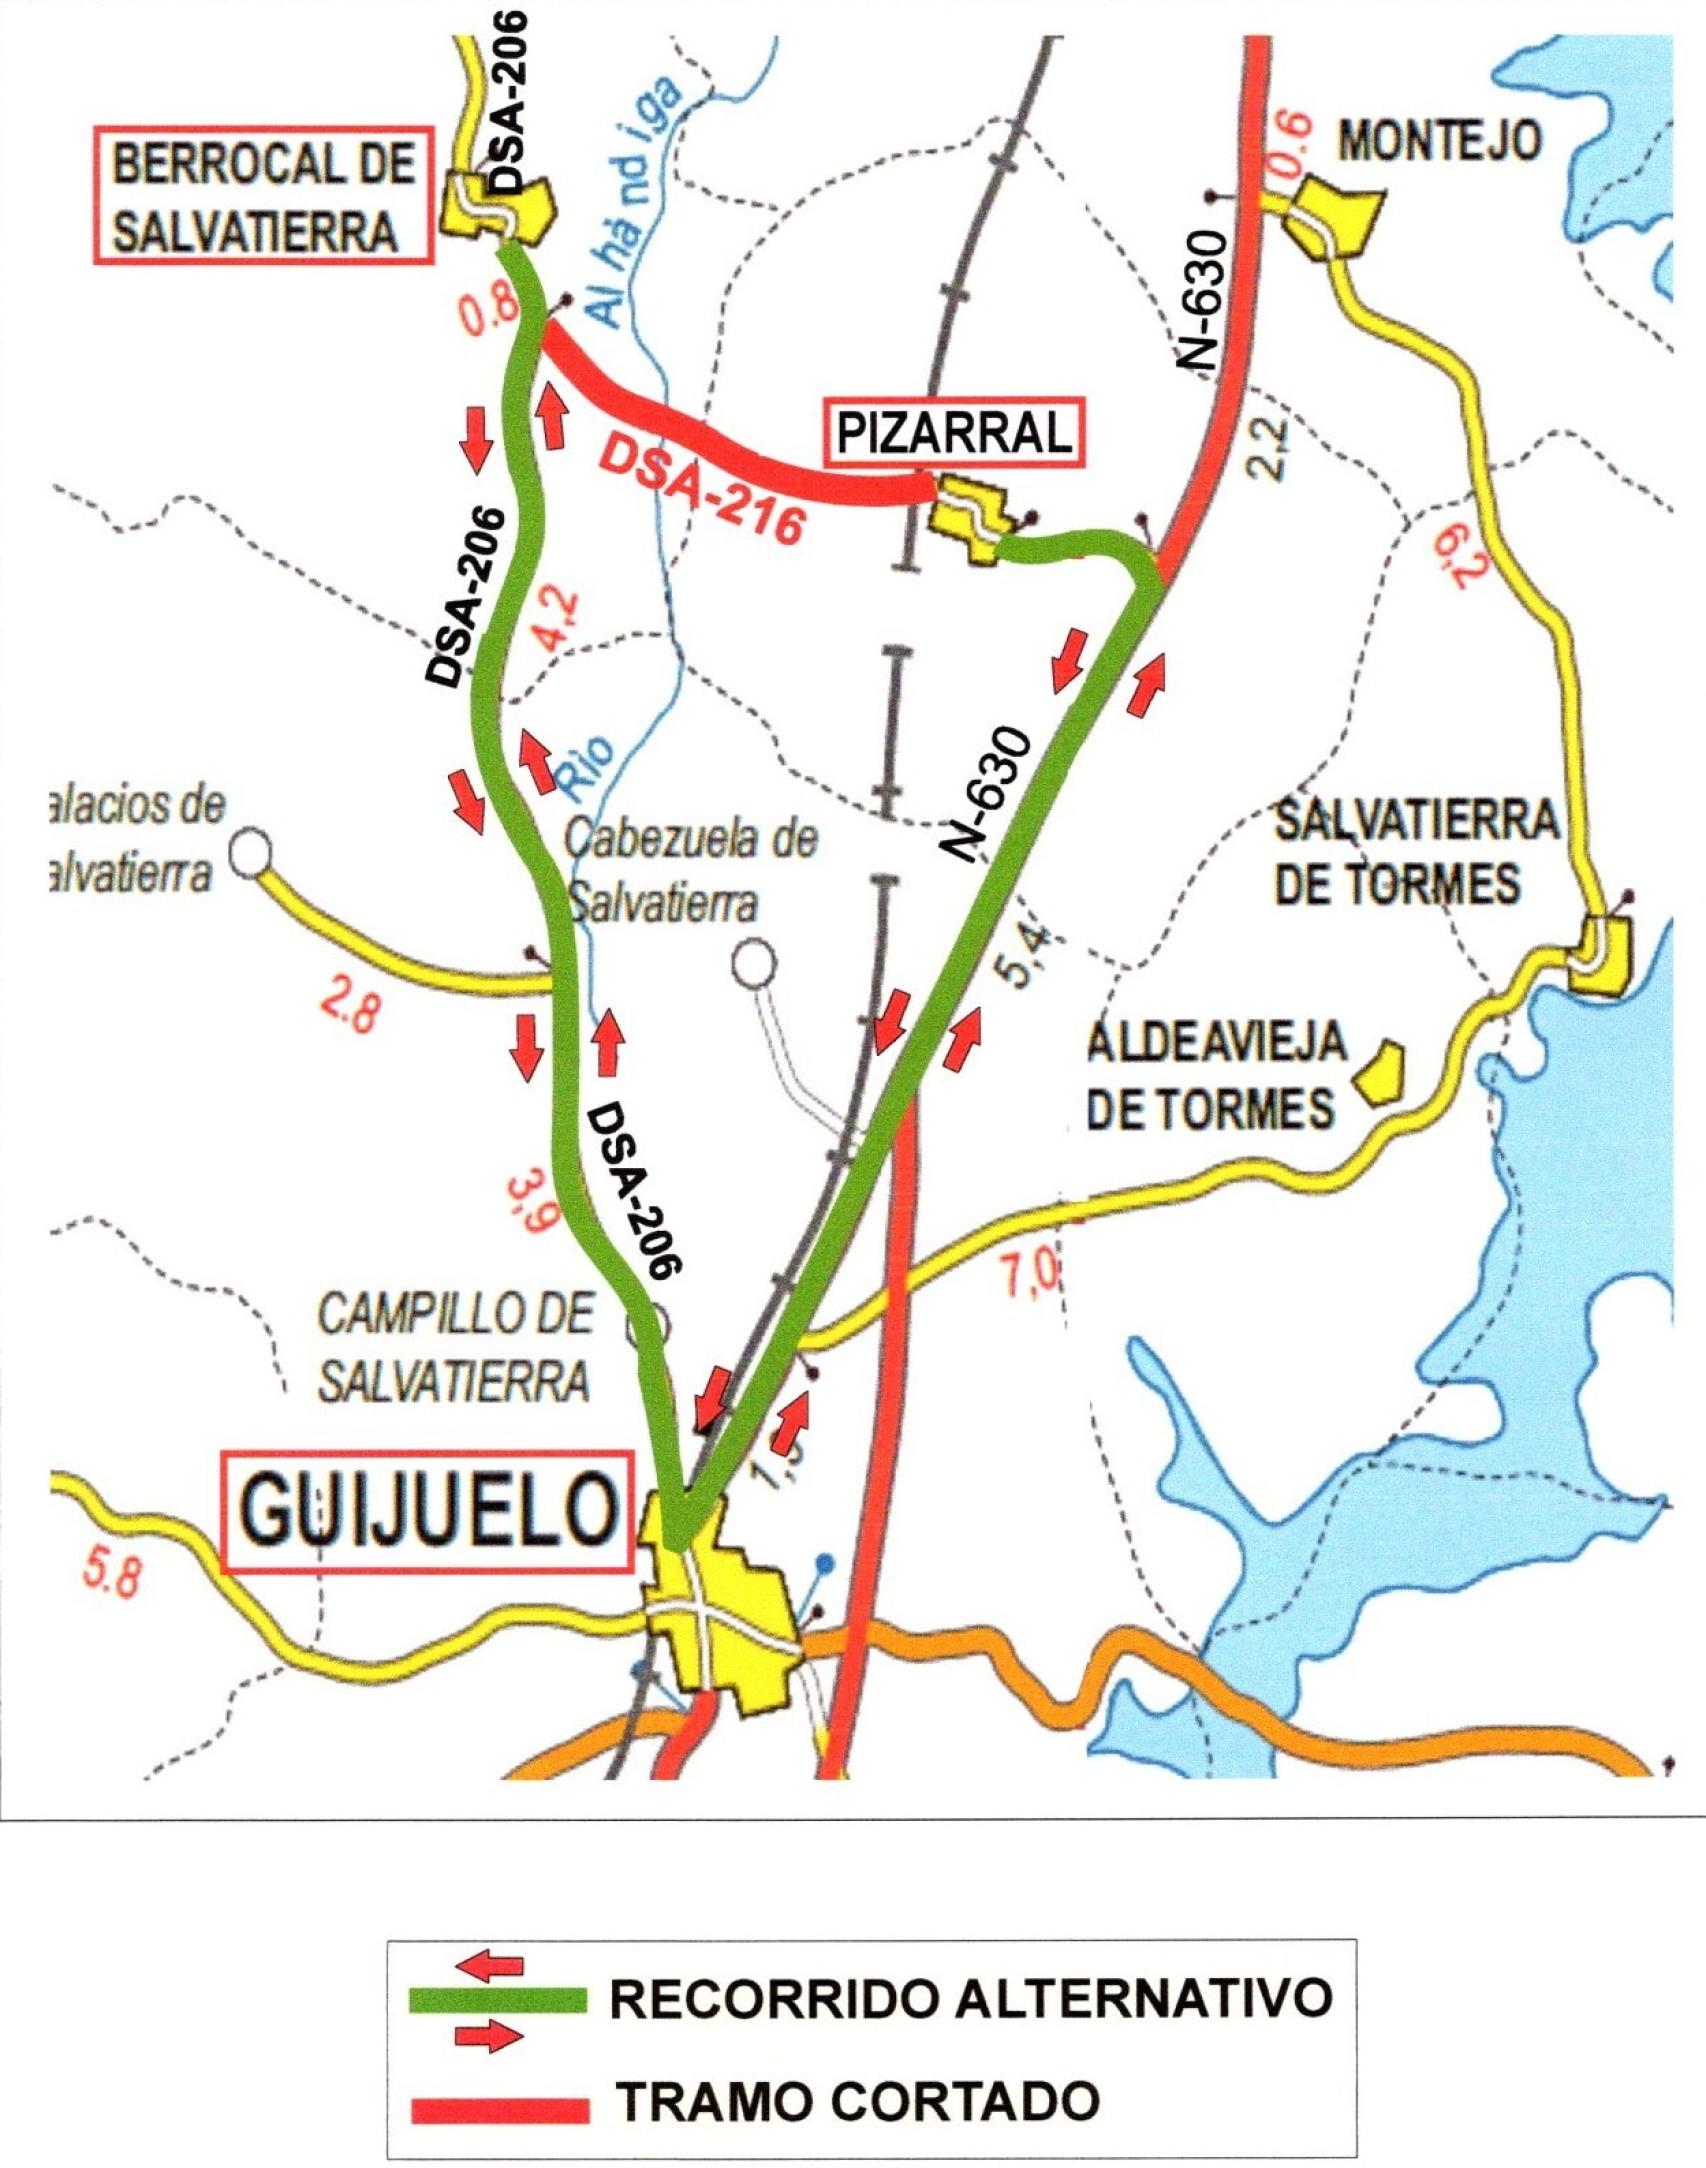 Para los desplazamientos entre ambos puntos se recomienda el itinerario alternativo a través de los municipios de Guijuelo y Campillo de Salvatierra.